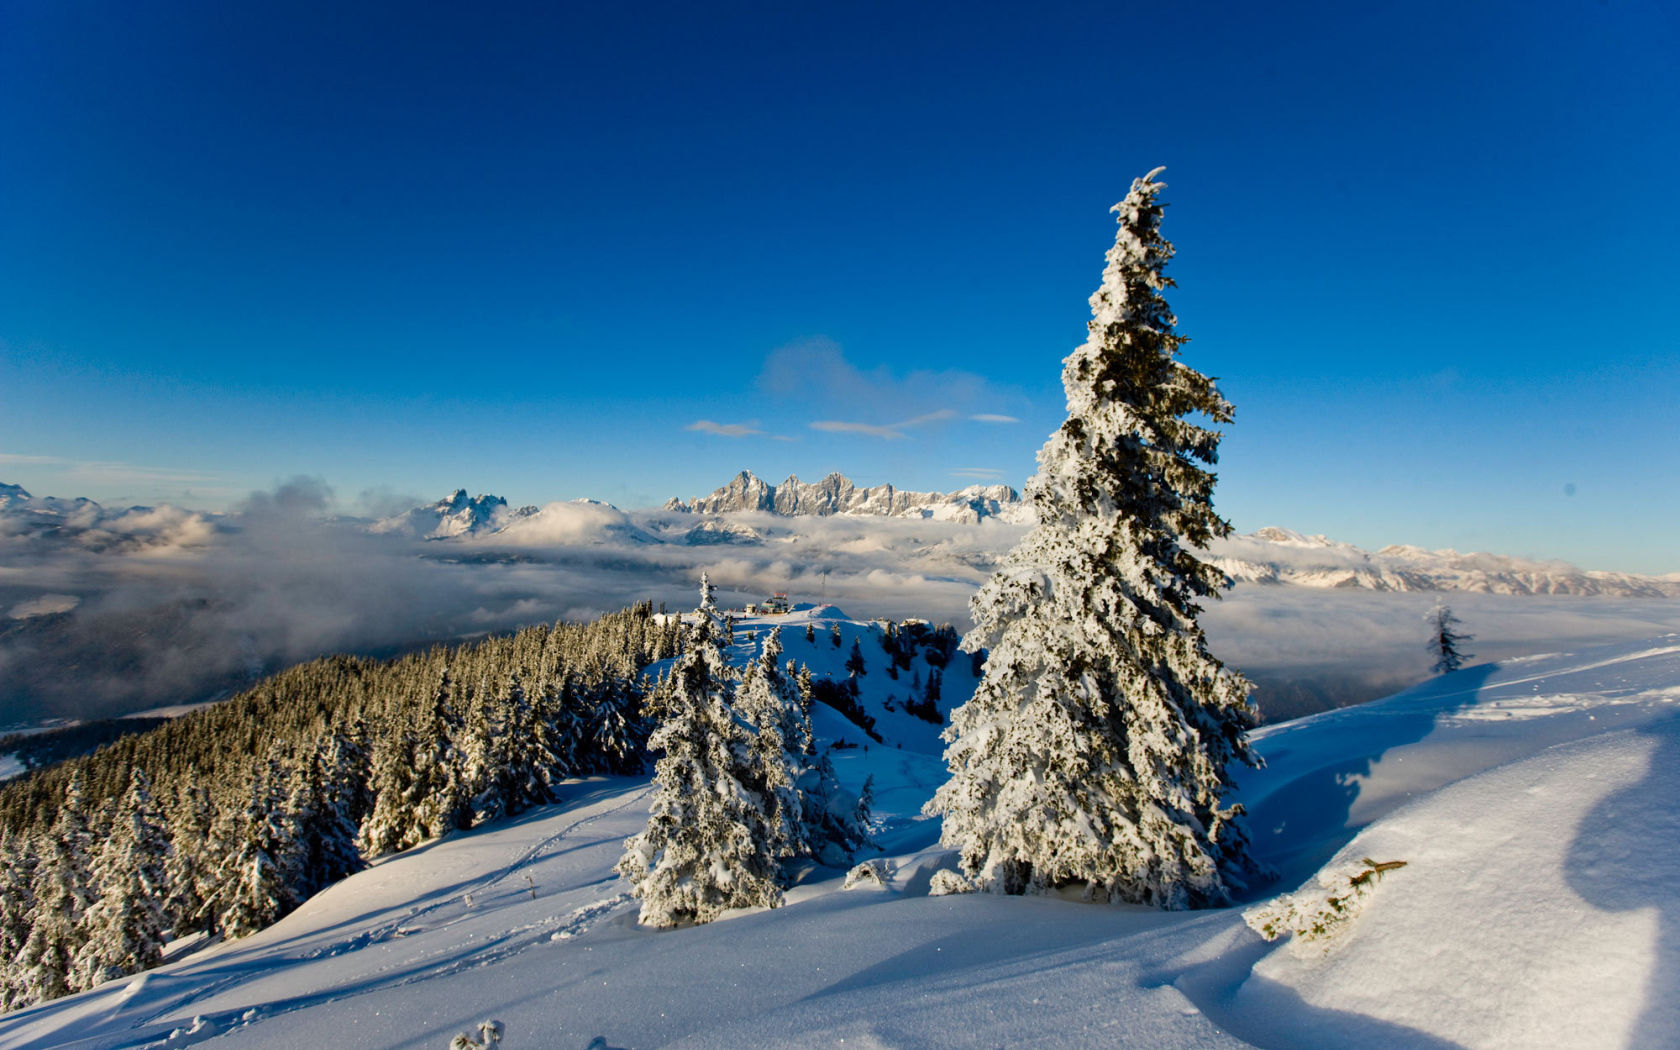 Заснеженная ель на горнолыжном курорте Шладминг, Австрия